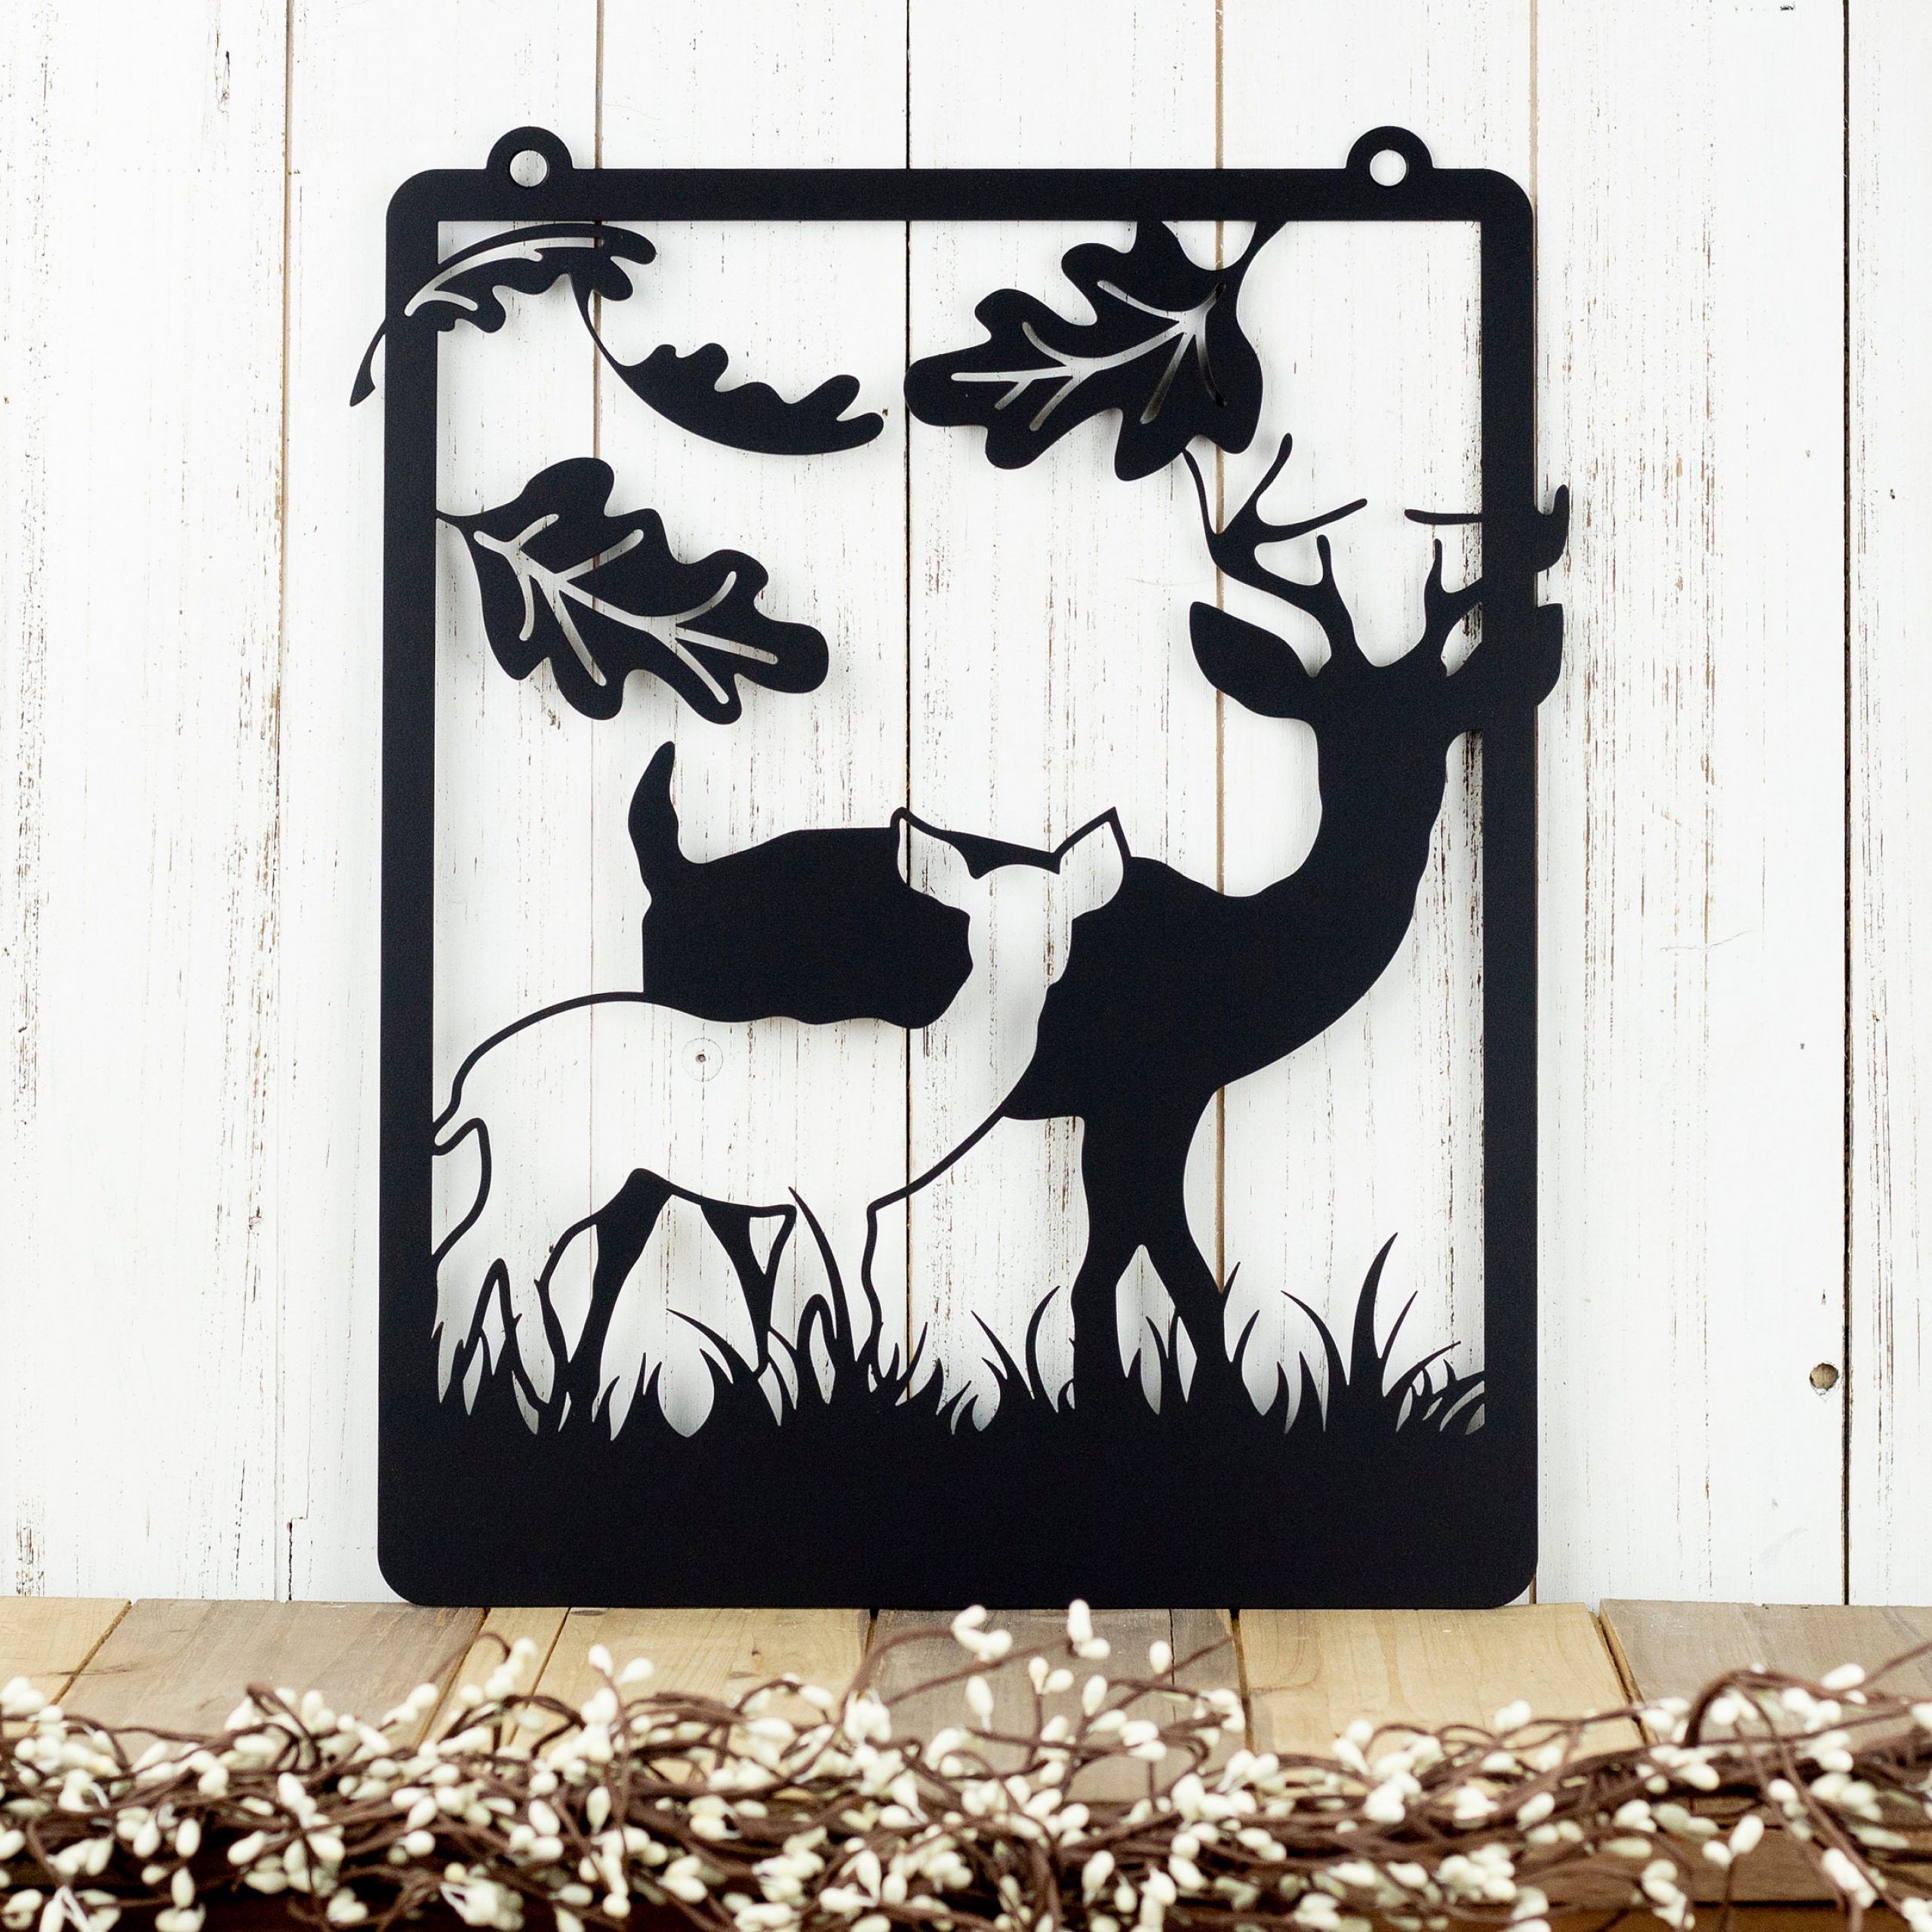 Deer Garden Hanging Metal Wall Art – Black, 12.5x (View 14 of 20)